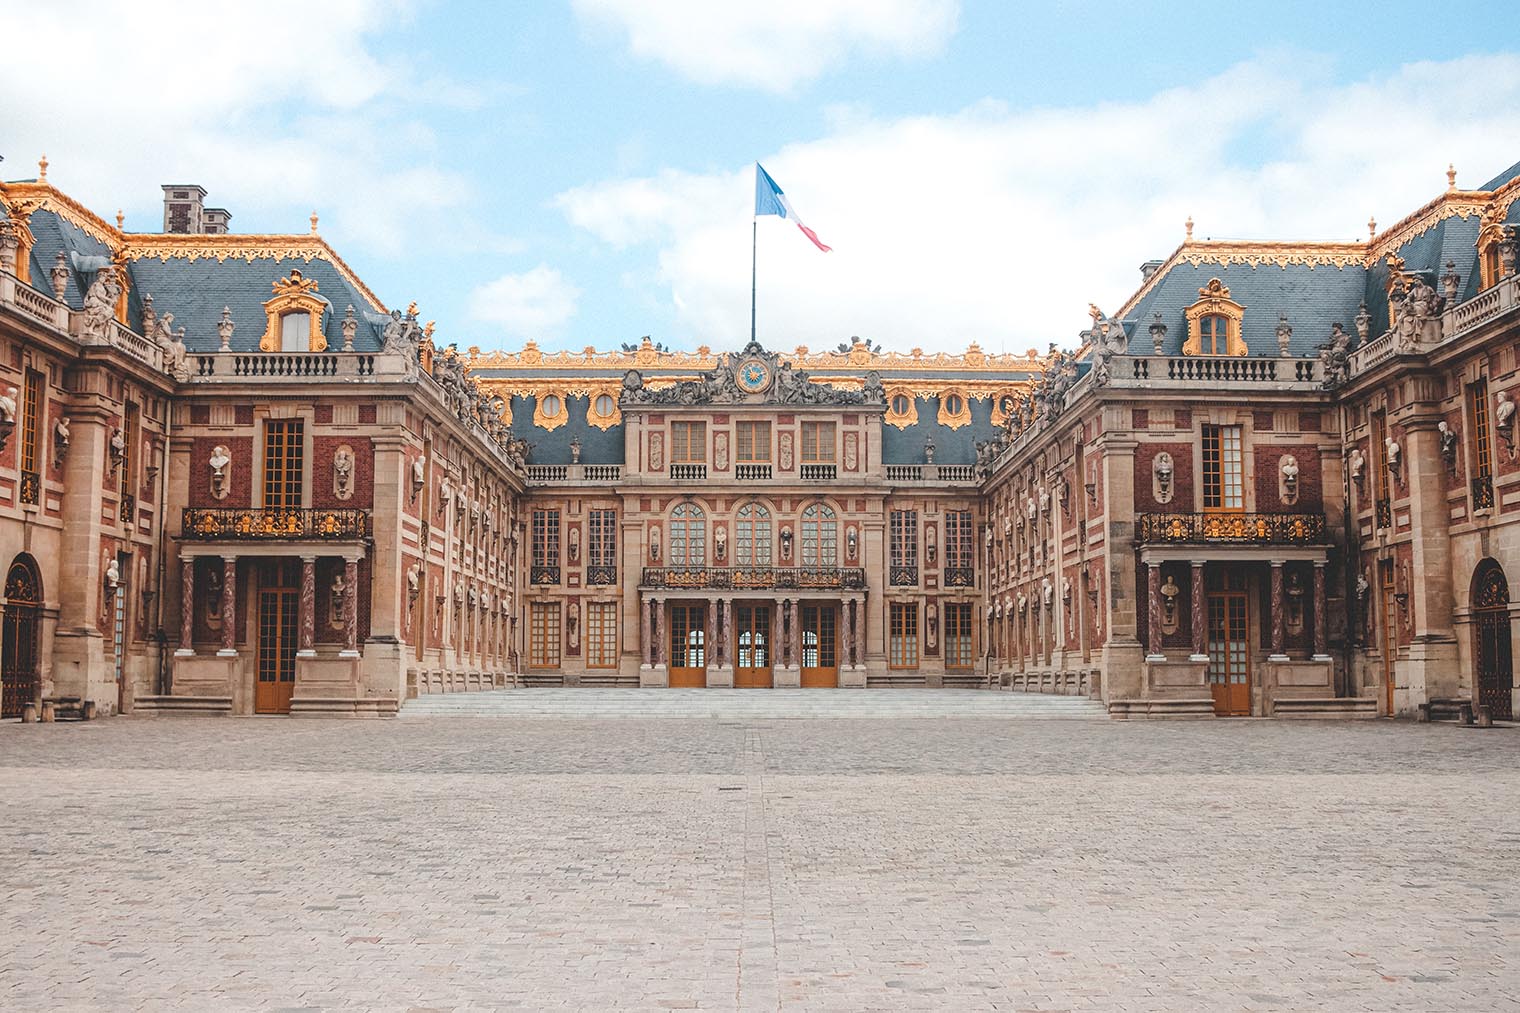 ヴェルサイユの宮殿と庭園 | フランス